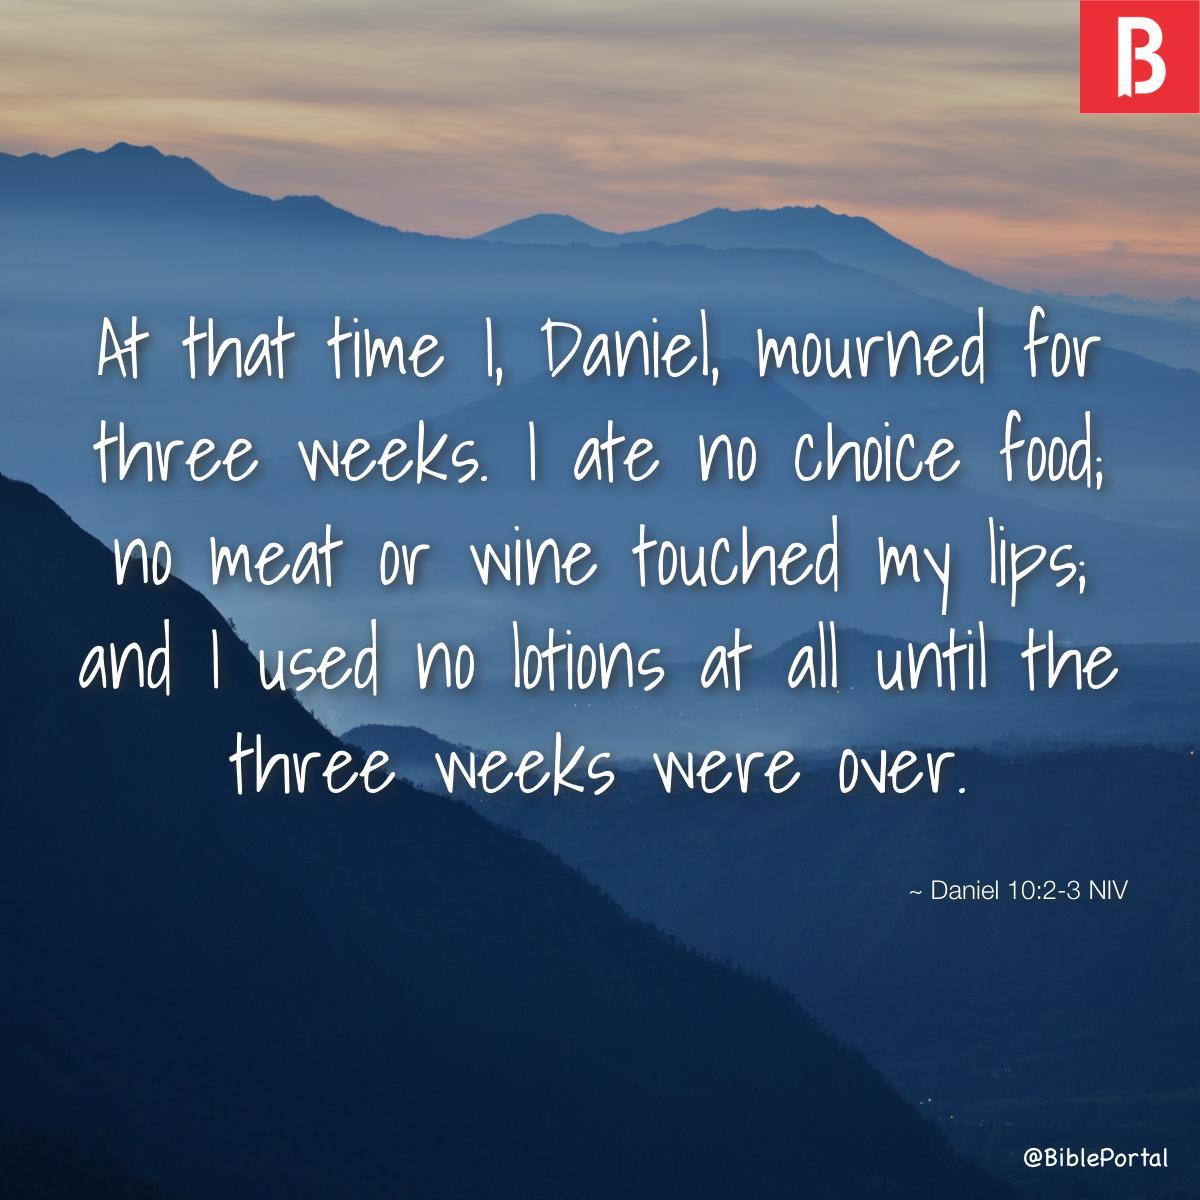 Daniel 10:2-3 NIV